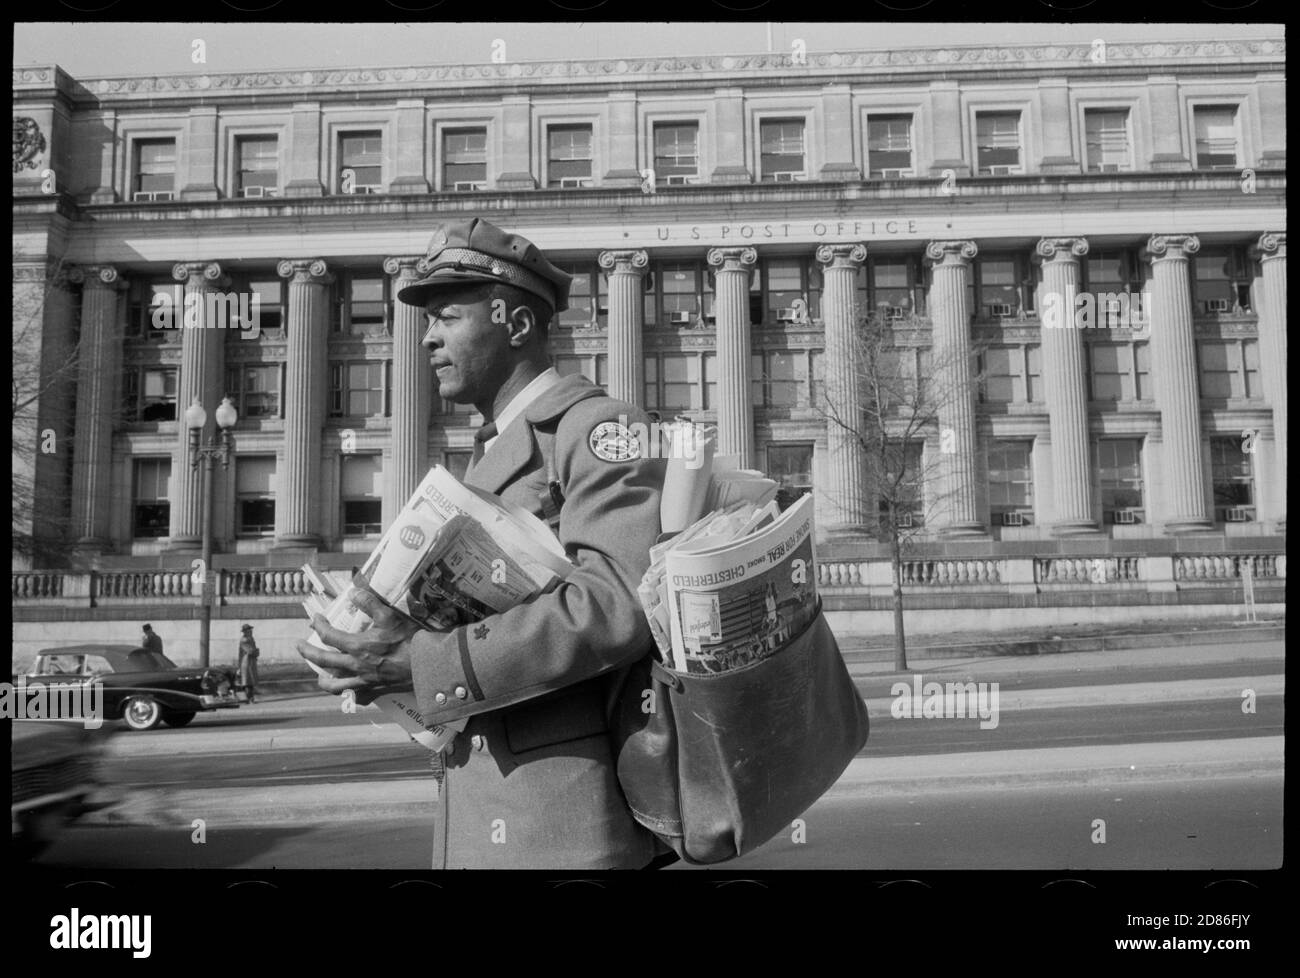 Un postier afro-américain suit son itinéraire tout en étant chargé de courrier, Washington, DC, 4/1957. (Photo de Warren K Leffler/US News & World Report Magazine Photograph Collection/RBM Vintage Images) Banque D'Images